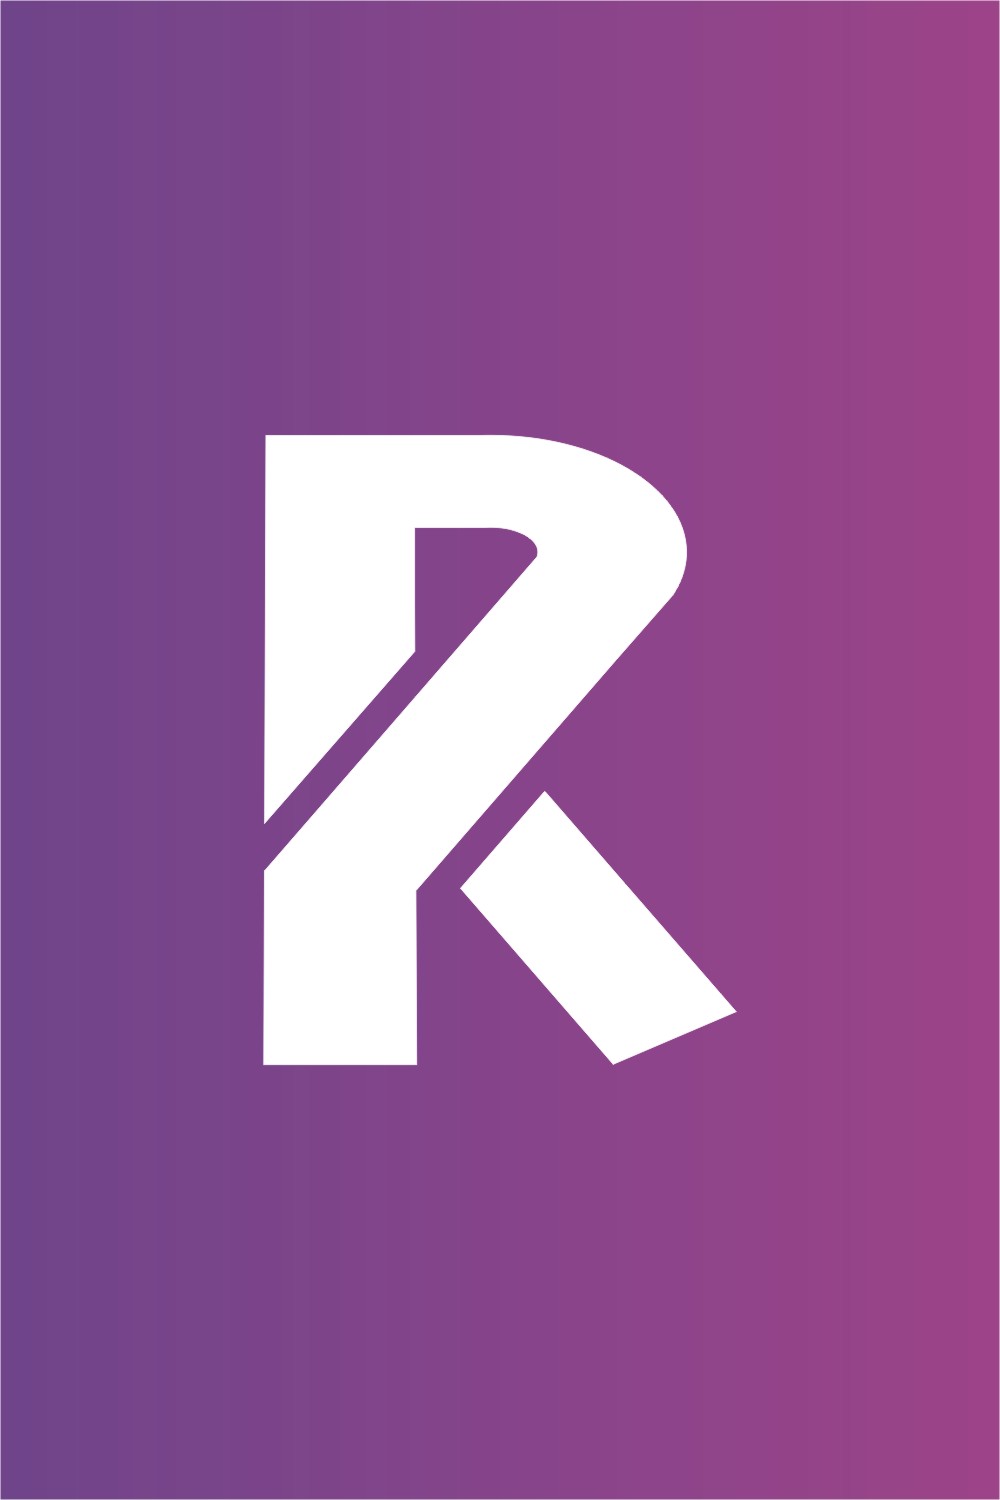 Letter R K logo pinterest preview image.